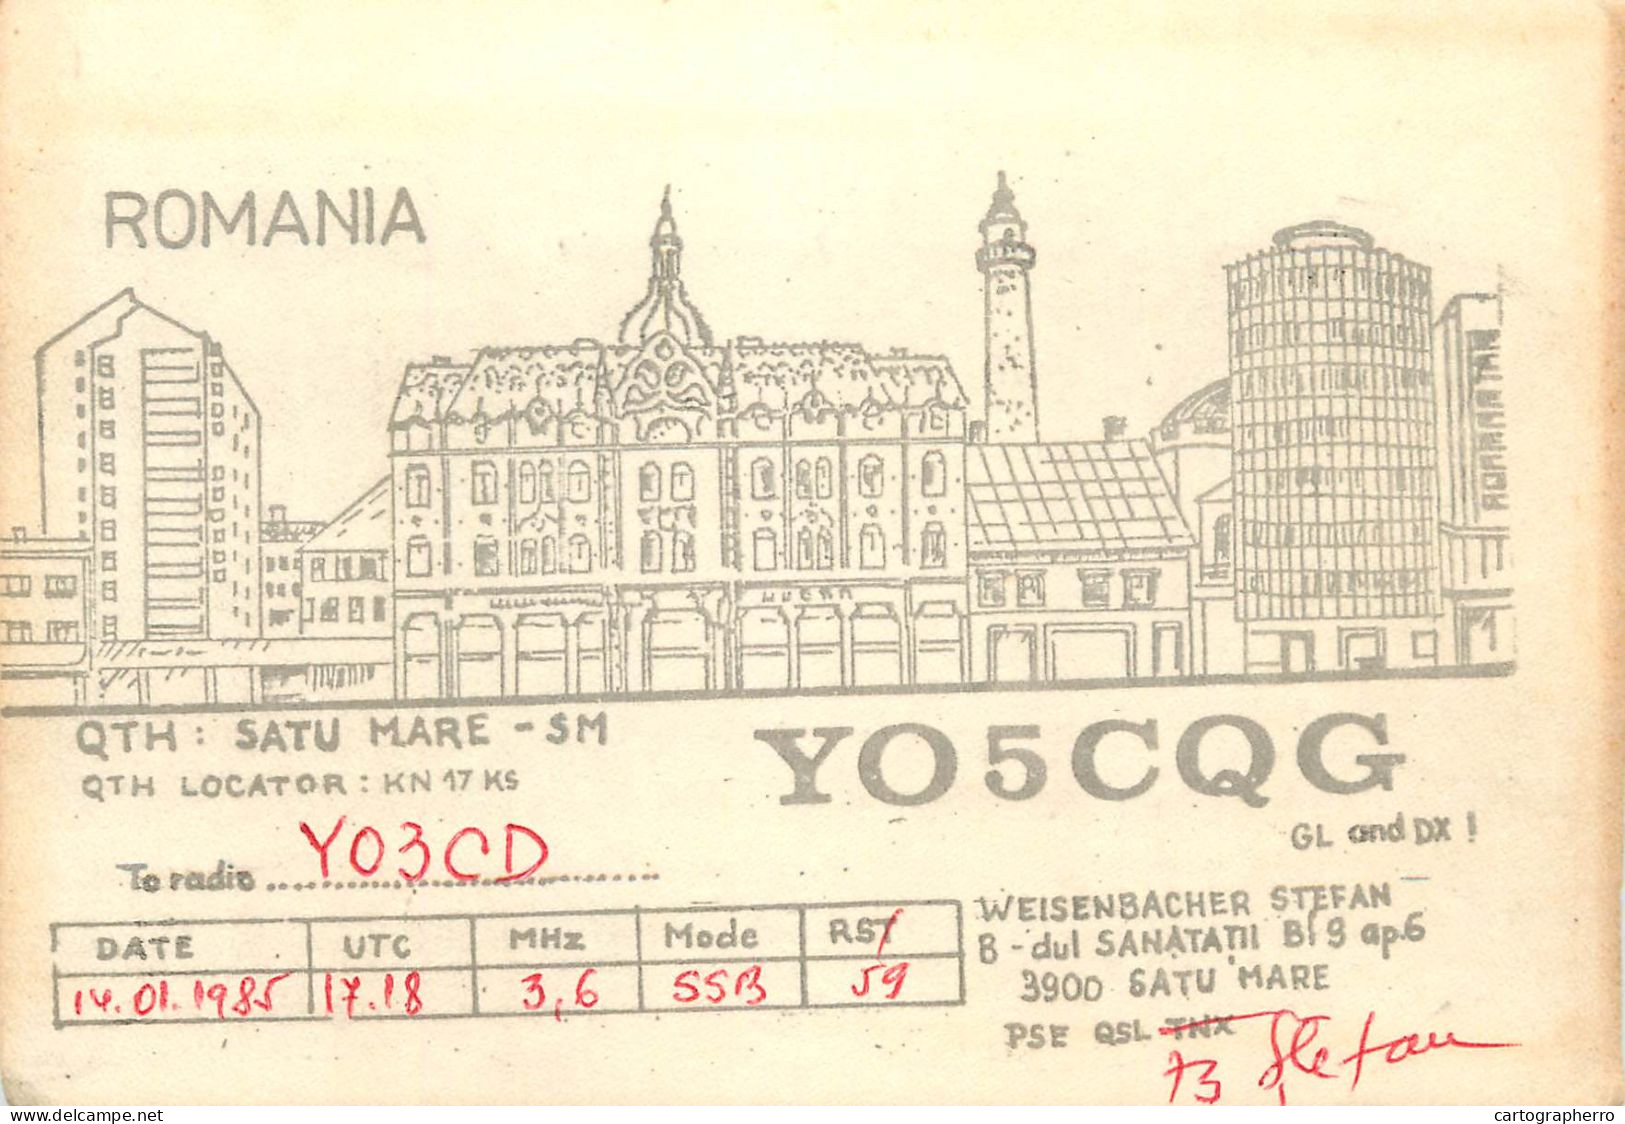 Romania Radio Amateur QSL Post Card Y05CQC Y03CD - Radio Amateur